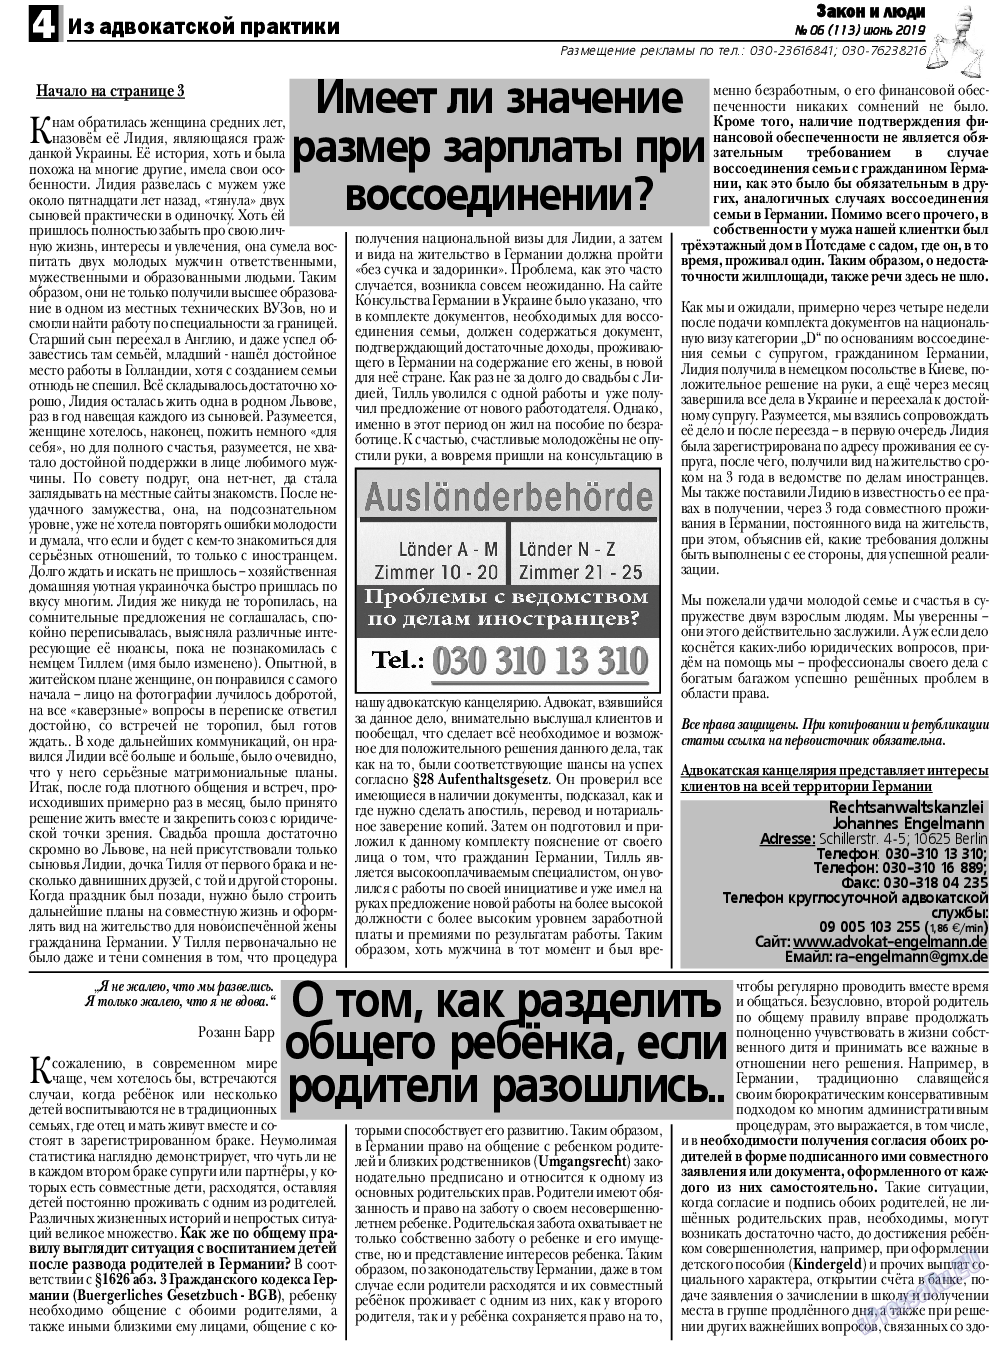 Закон и люди, газета. 2019 №6 стр.4